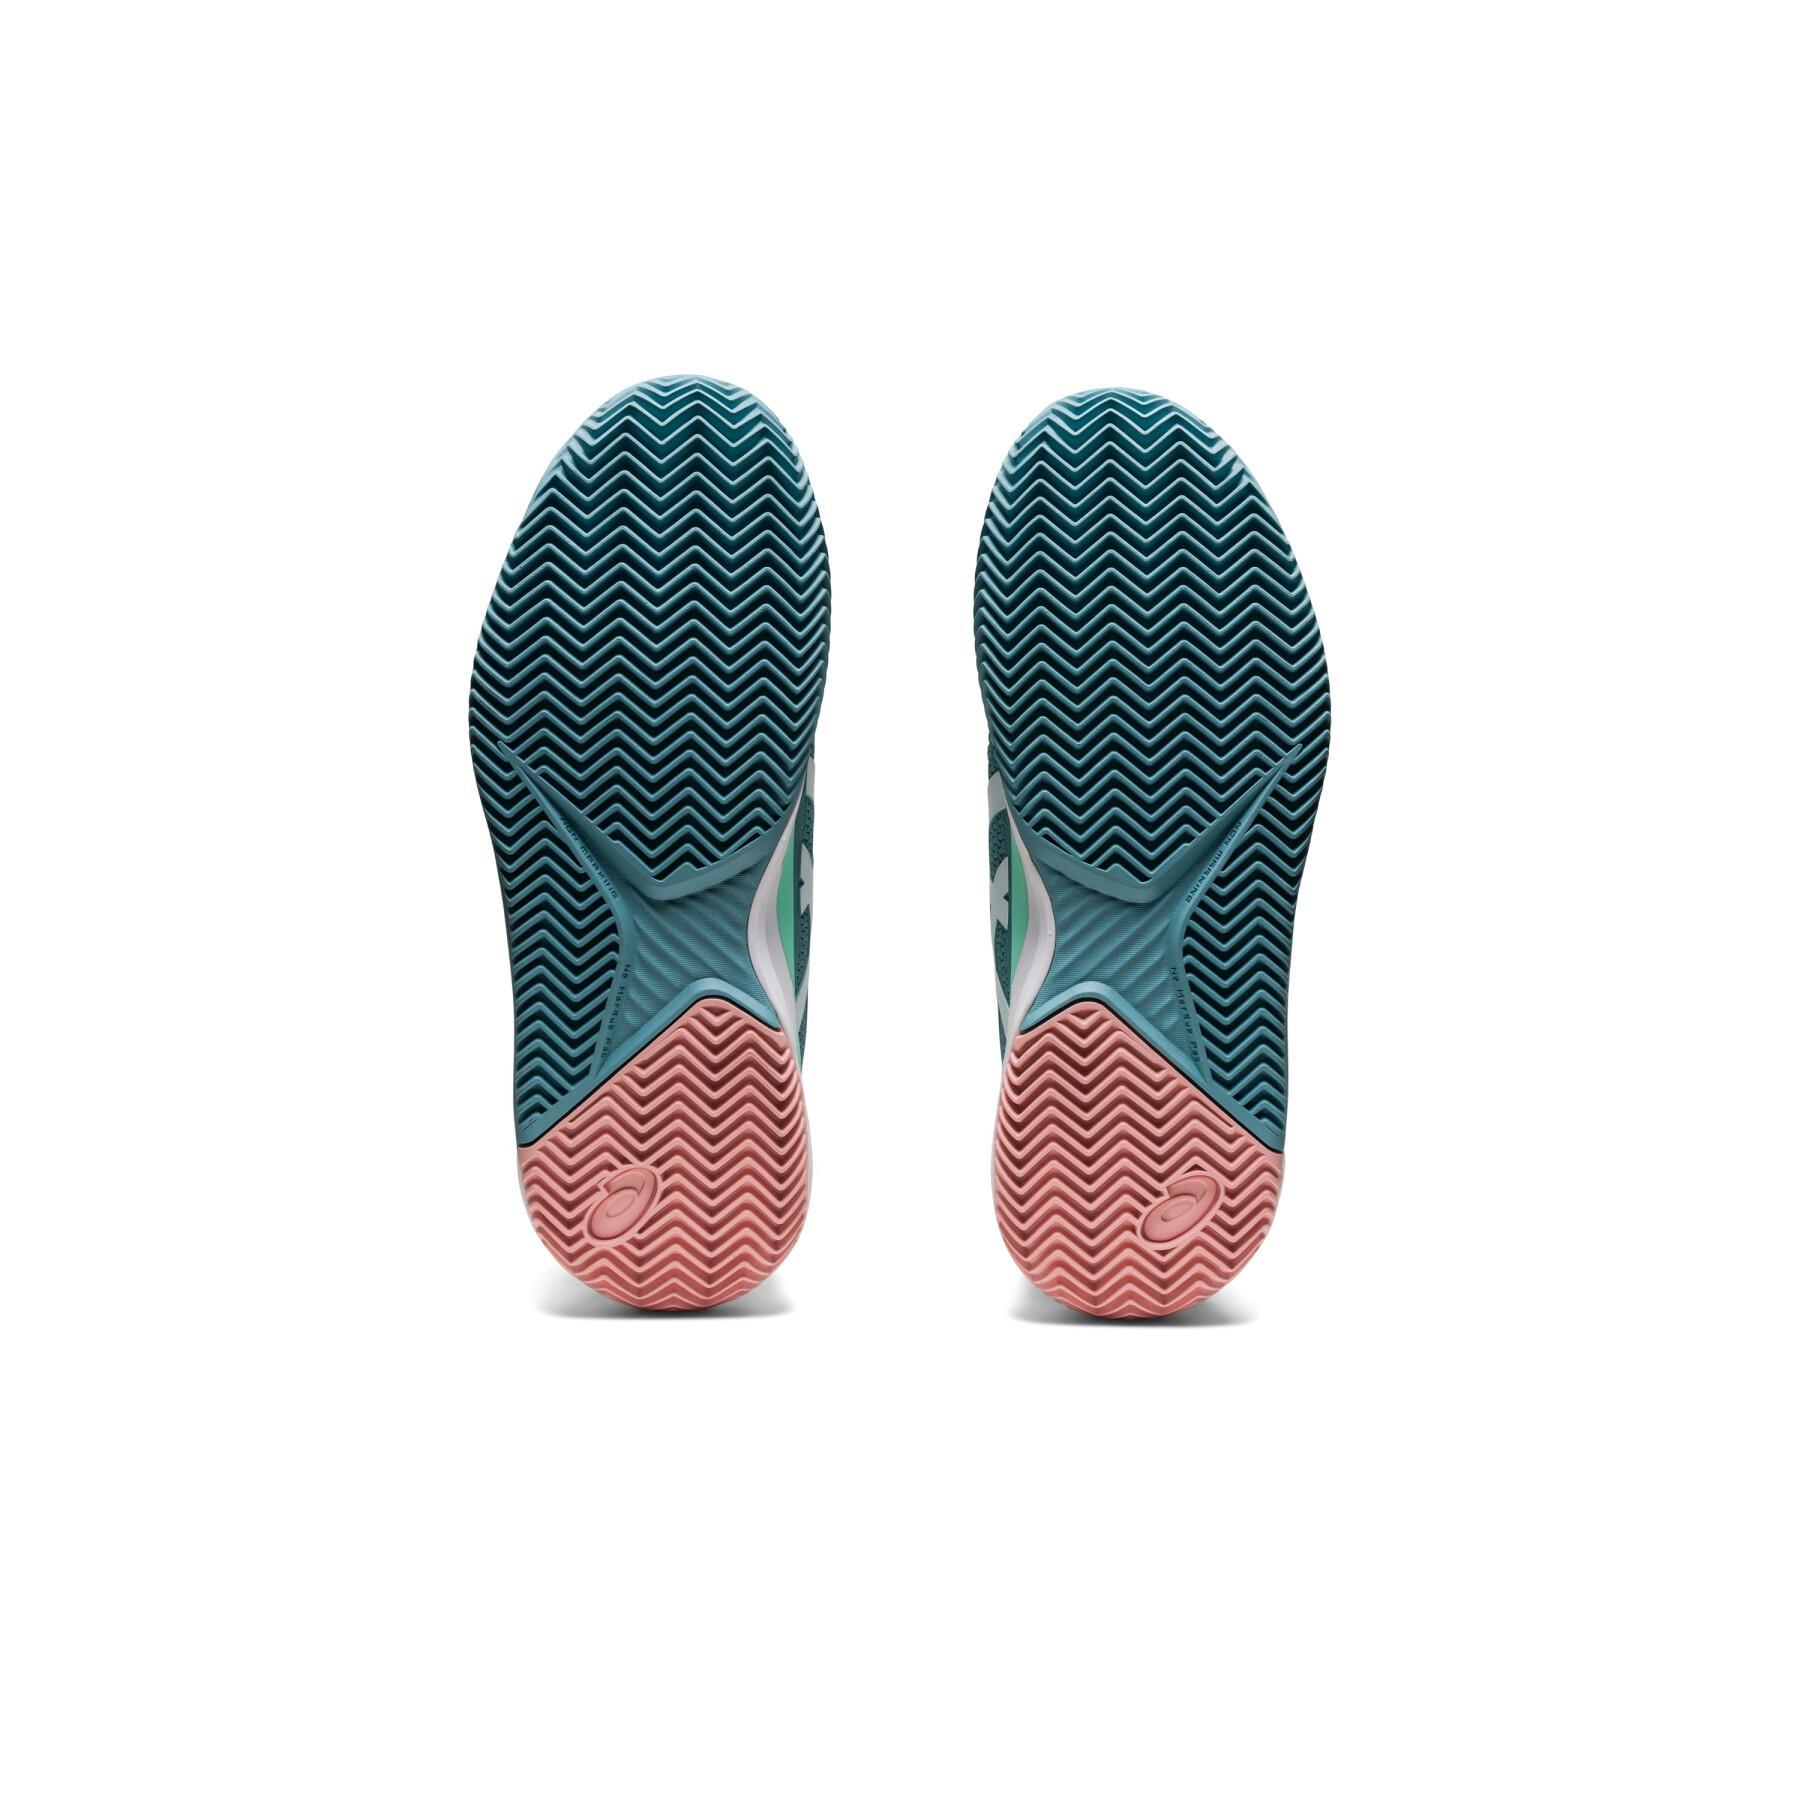 Chaussures de tennis femme Asics Gel-resolution 8 clay